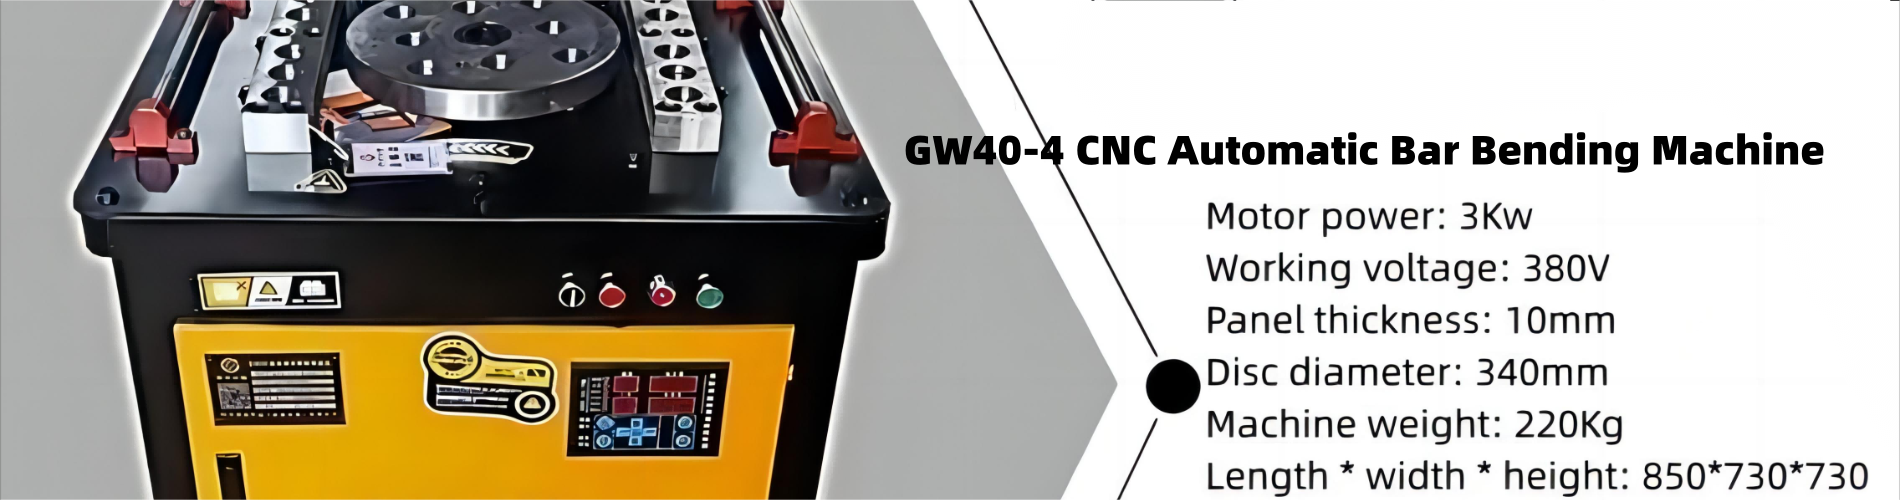 GW40-4 Mesin Bending Batang Otomatis CNC